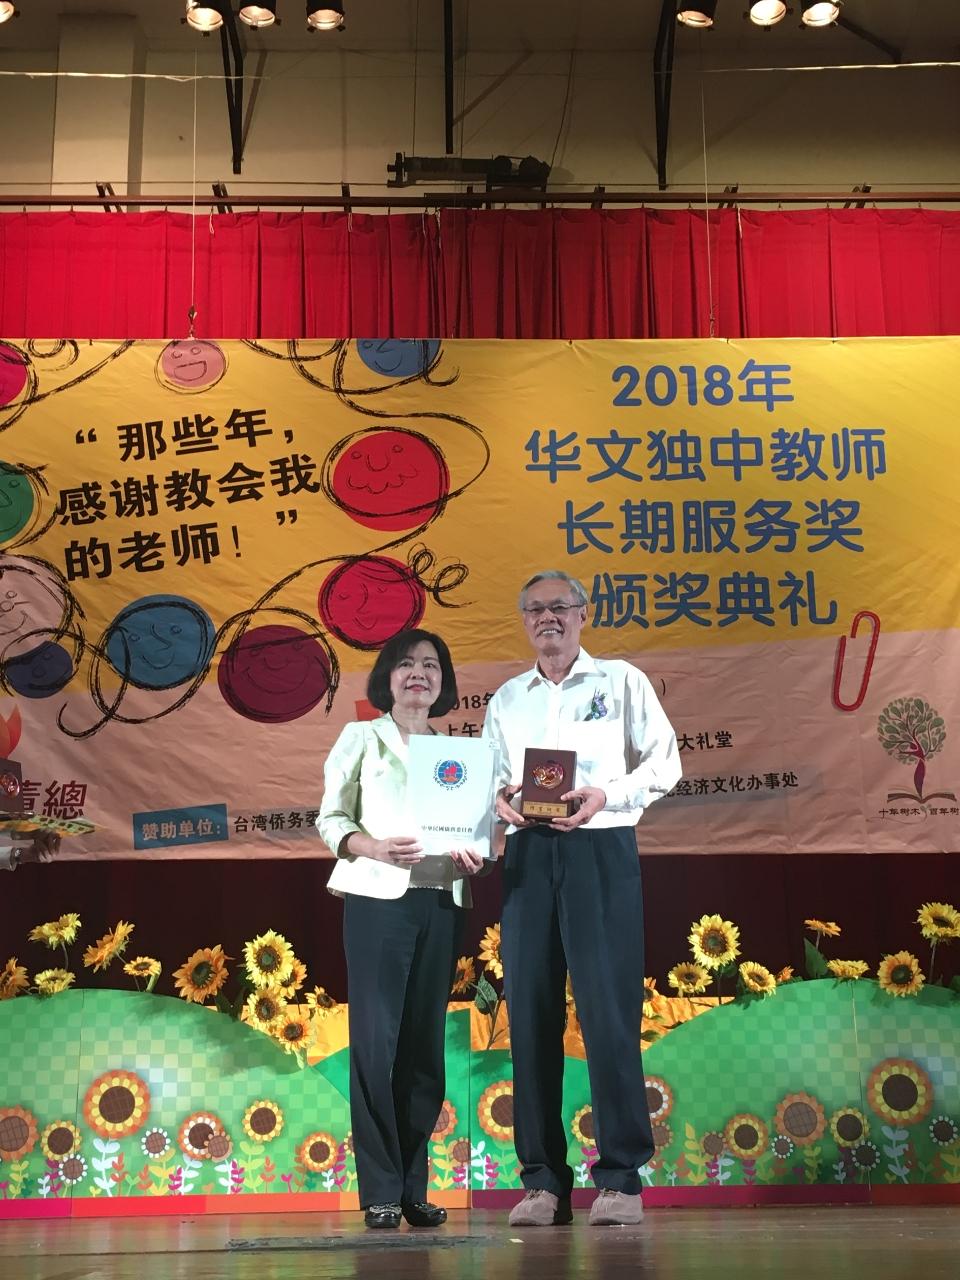 洪大使慧珠於活動中頒贈獎狀及獎牌予服務滿40年之教師。